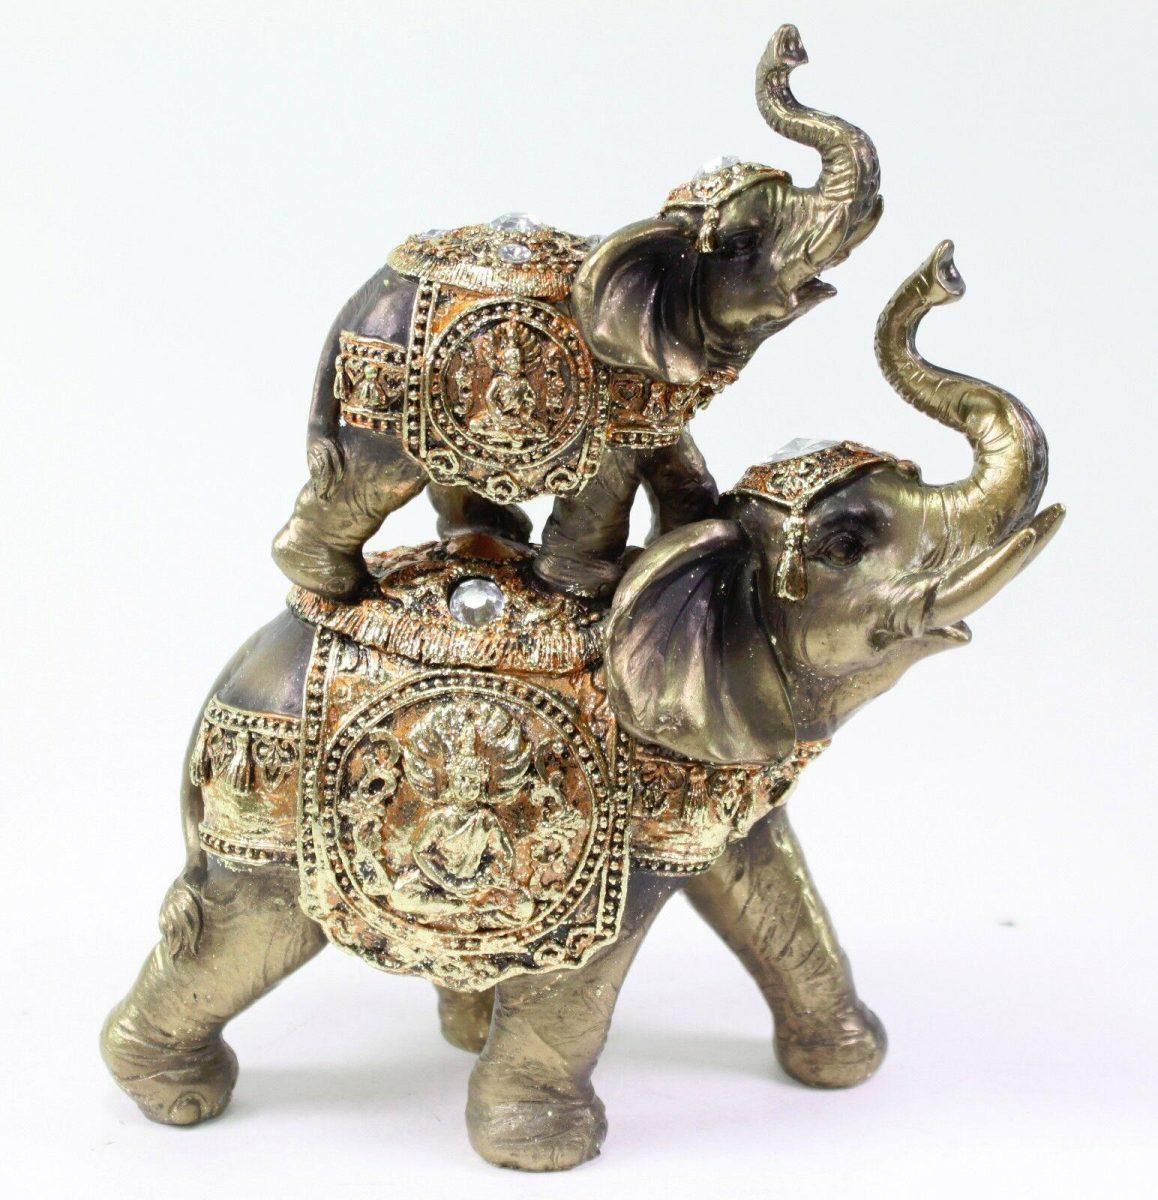 Elephant symbolism. What does the Elephant symbolize?